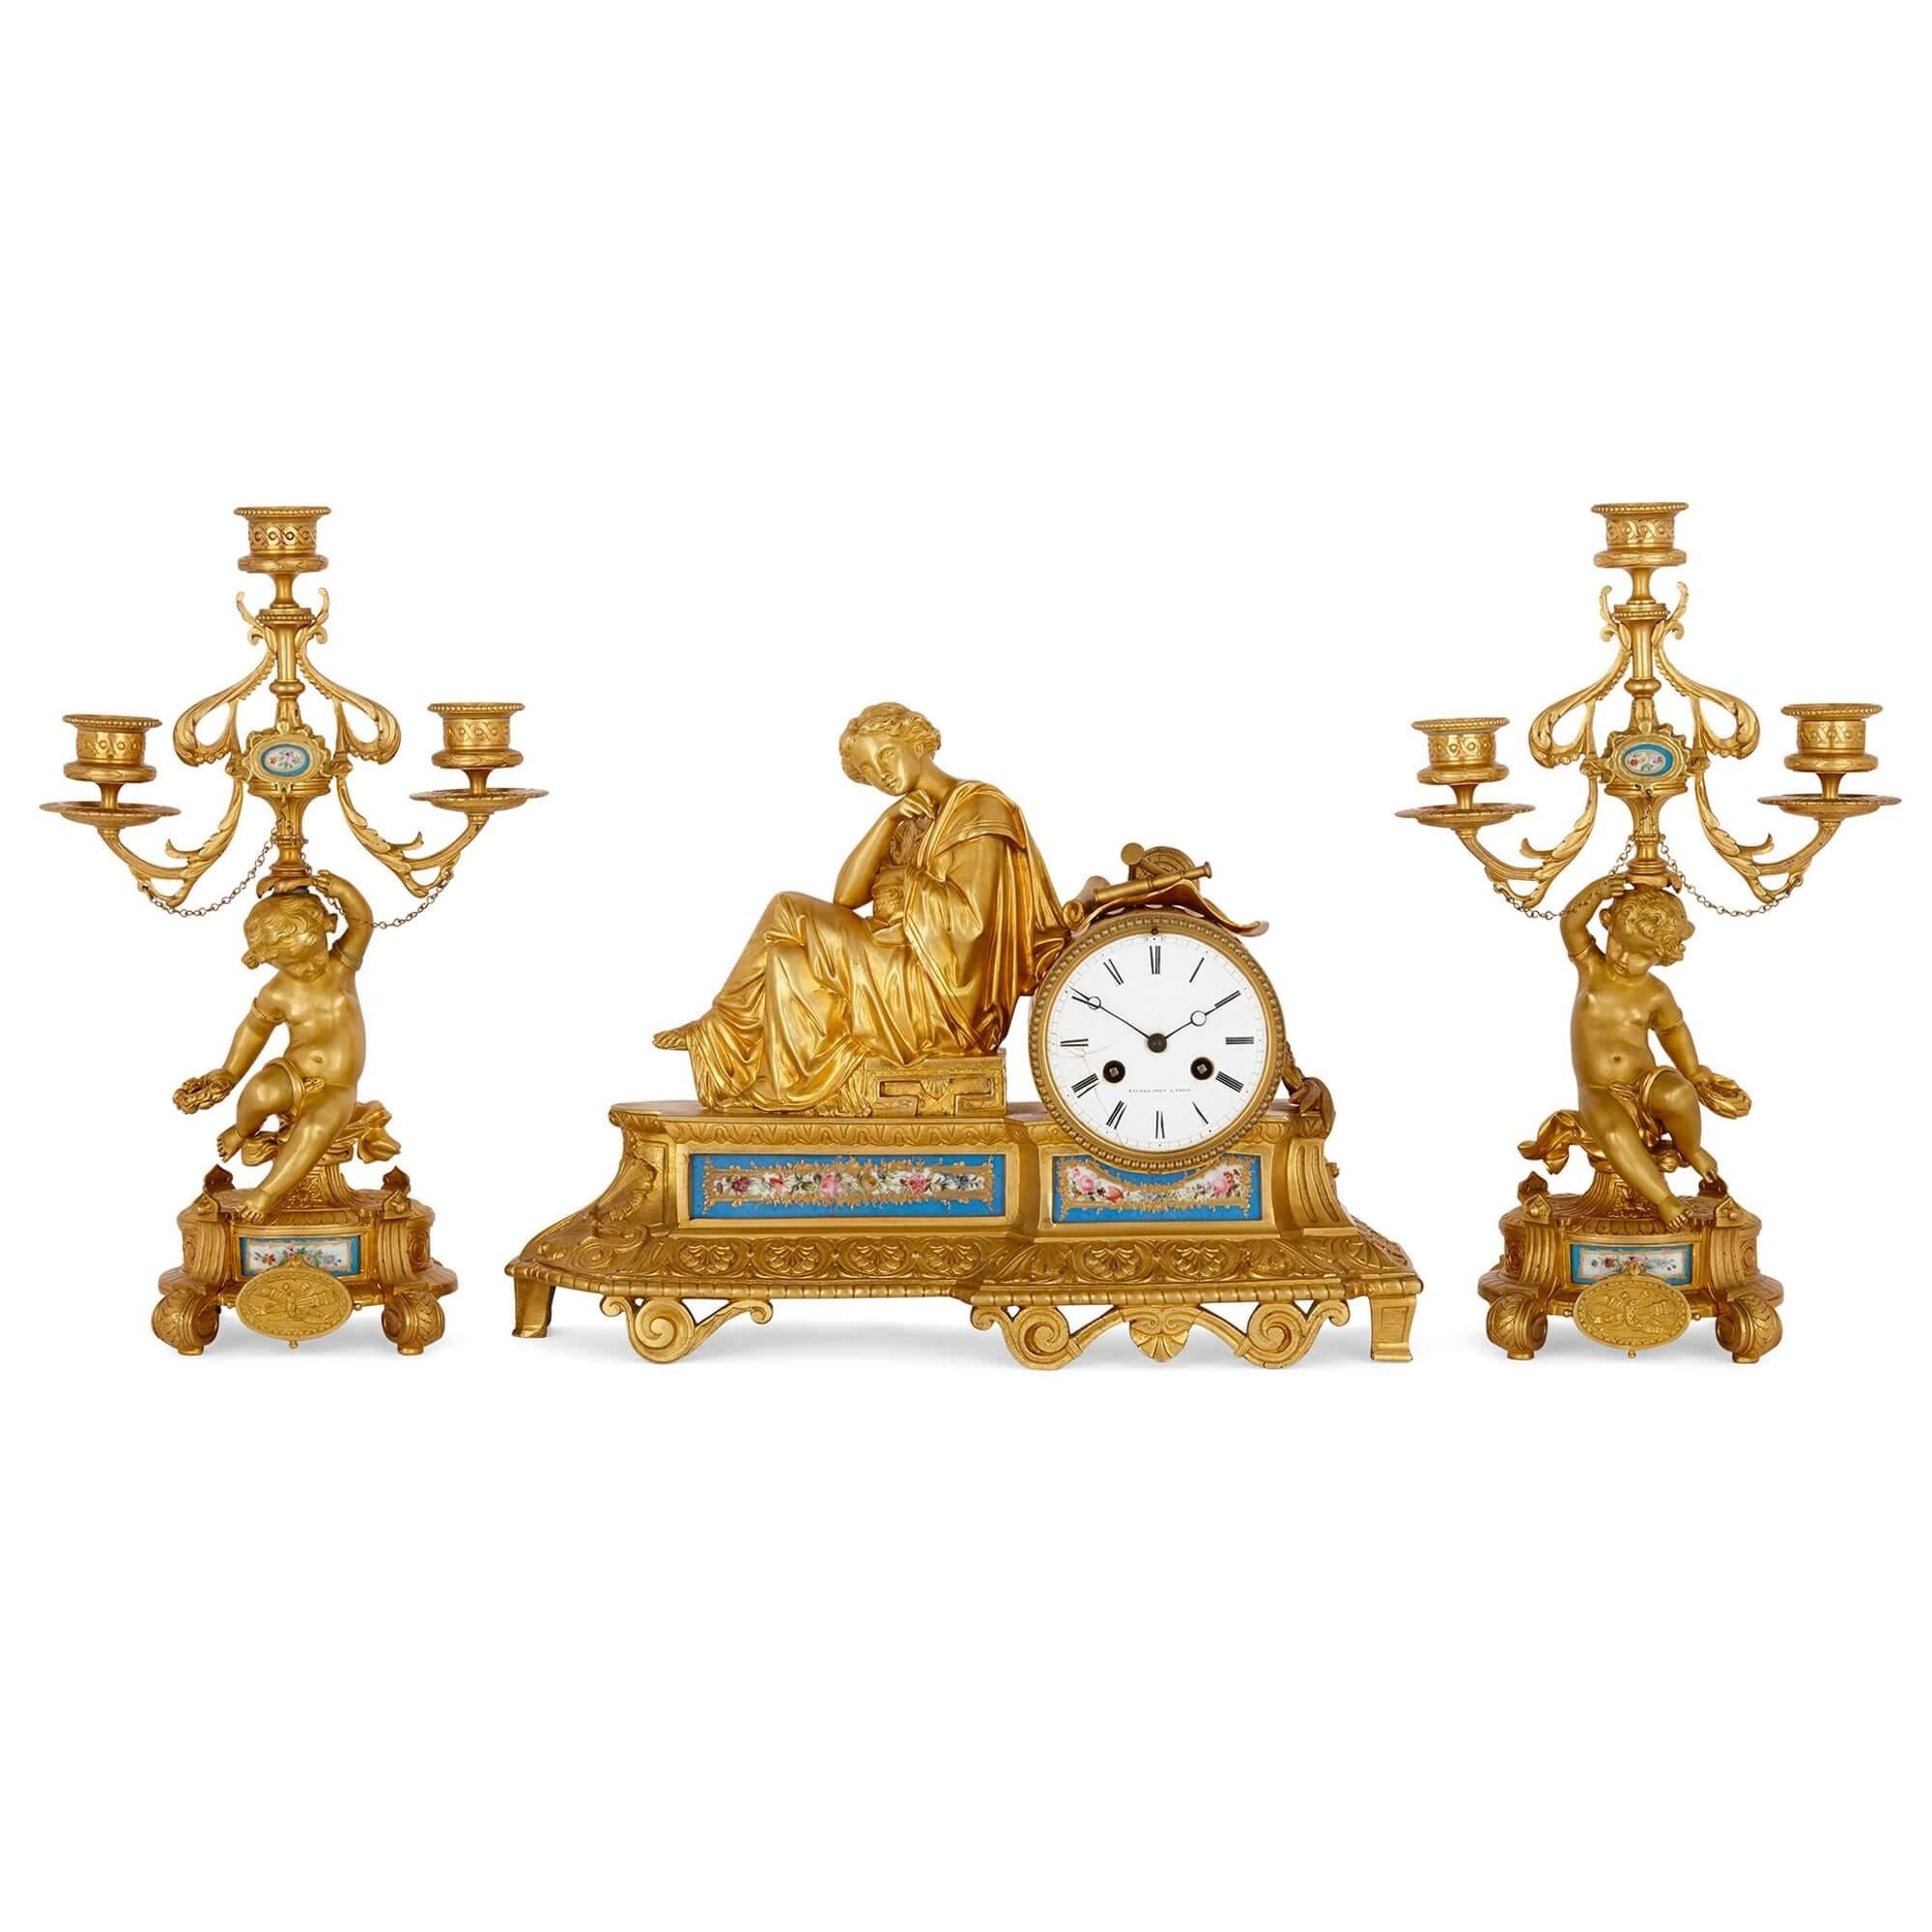 Zweiteiliges französisches Uhrenset aus Porzellan und vergoldeter Bronze
Französisch, Ende 19. Jahrhundert
Uhr: Höhe 27 cm, Breite 36,5 cm, Tiefe 12 cm
Kandelaber: Höhe 33 cm, Breite 20 cm, Tiefe 11,5 cm

Dieses erstklassige dreiteilige Uhrenset